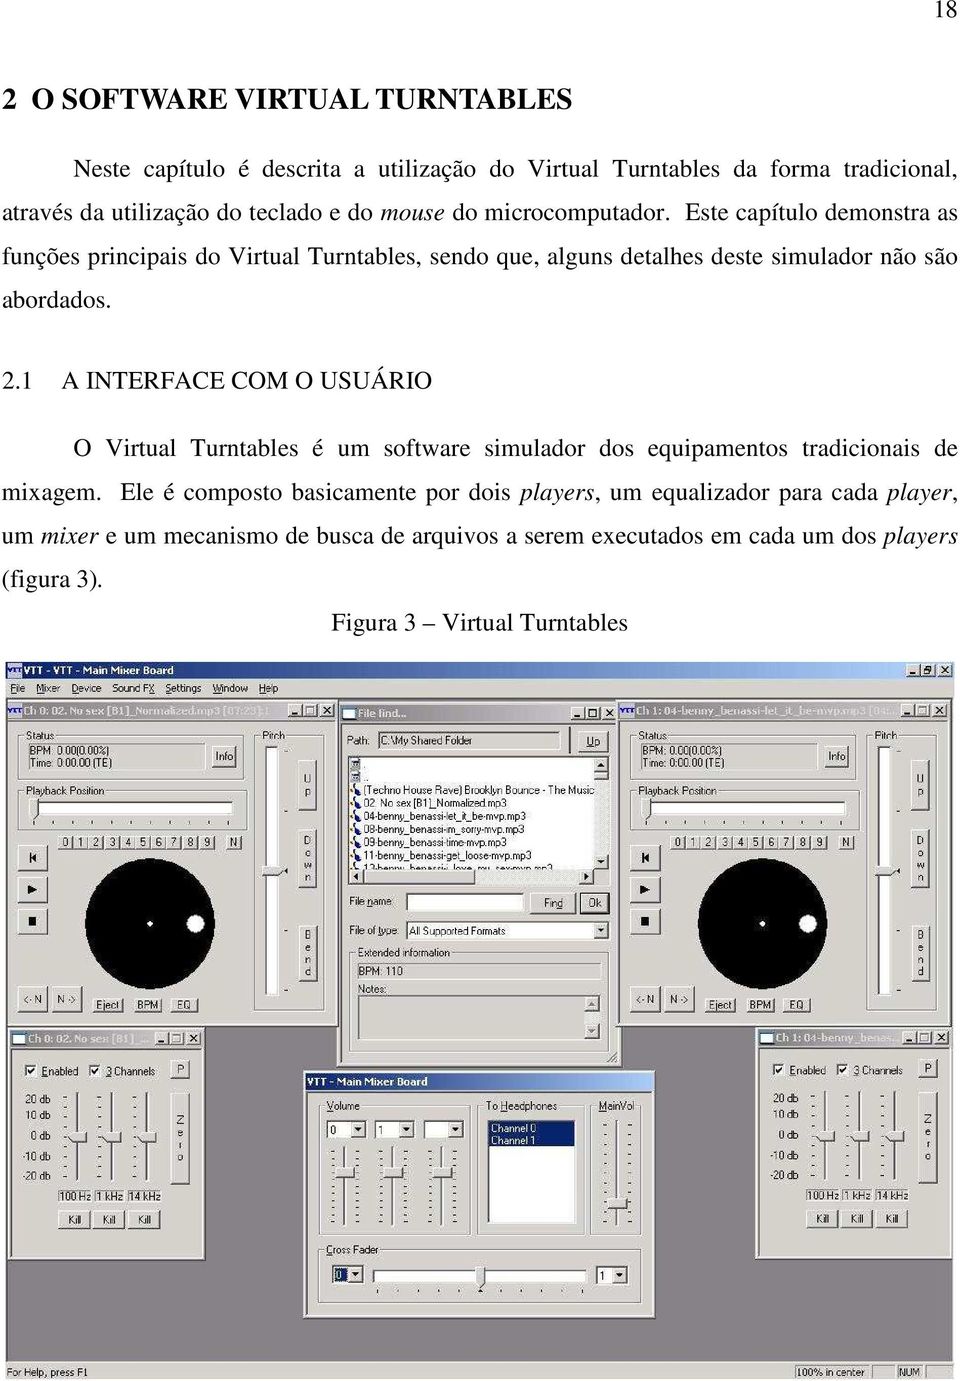 1 A INTERFACE COM O USUÁRIO O Virtual Turntables é um software simulador dos equipamentos tradicionais de mixagem.